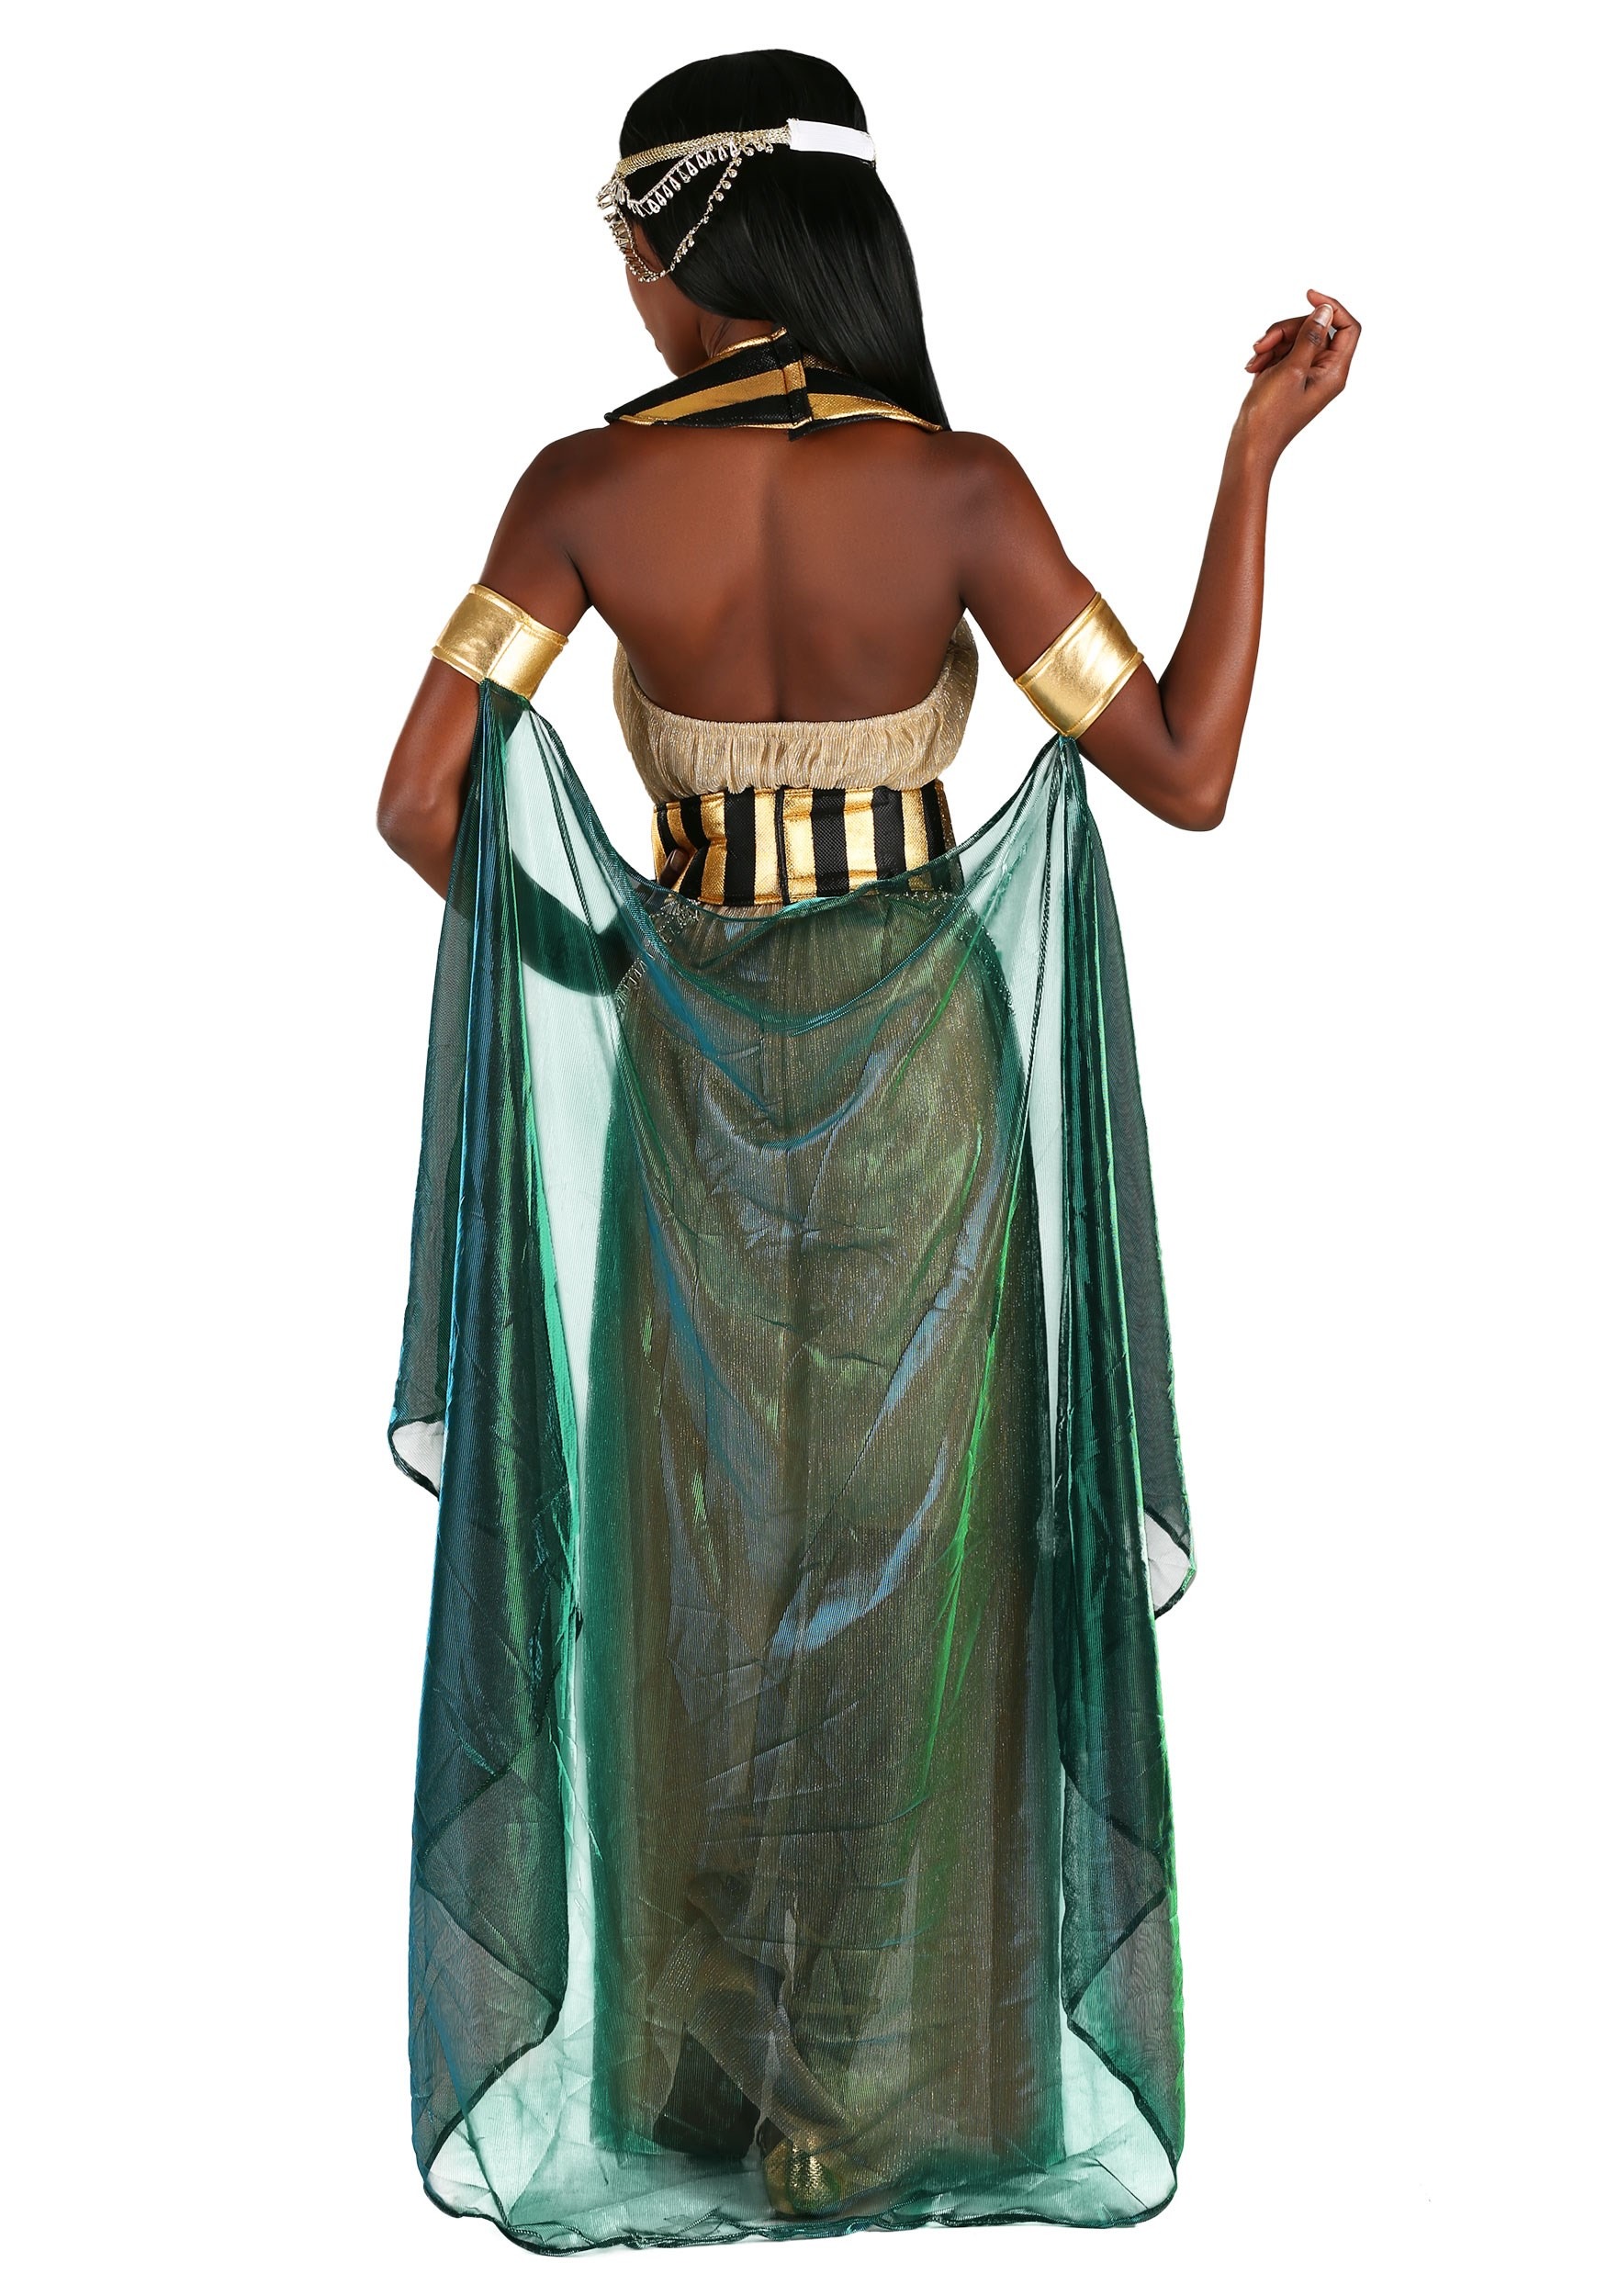 Egyptian Goddess Costume for Women